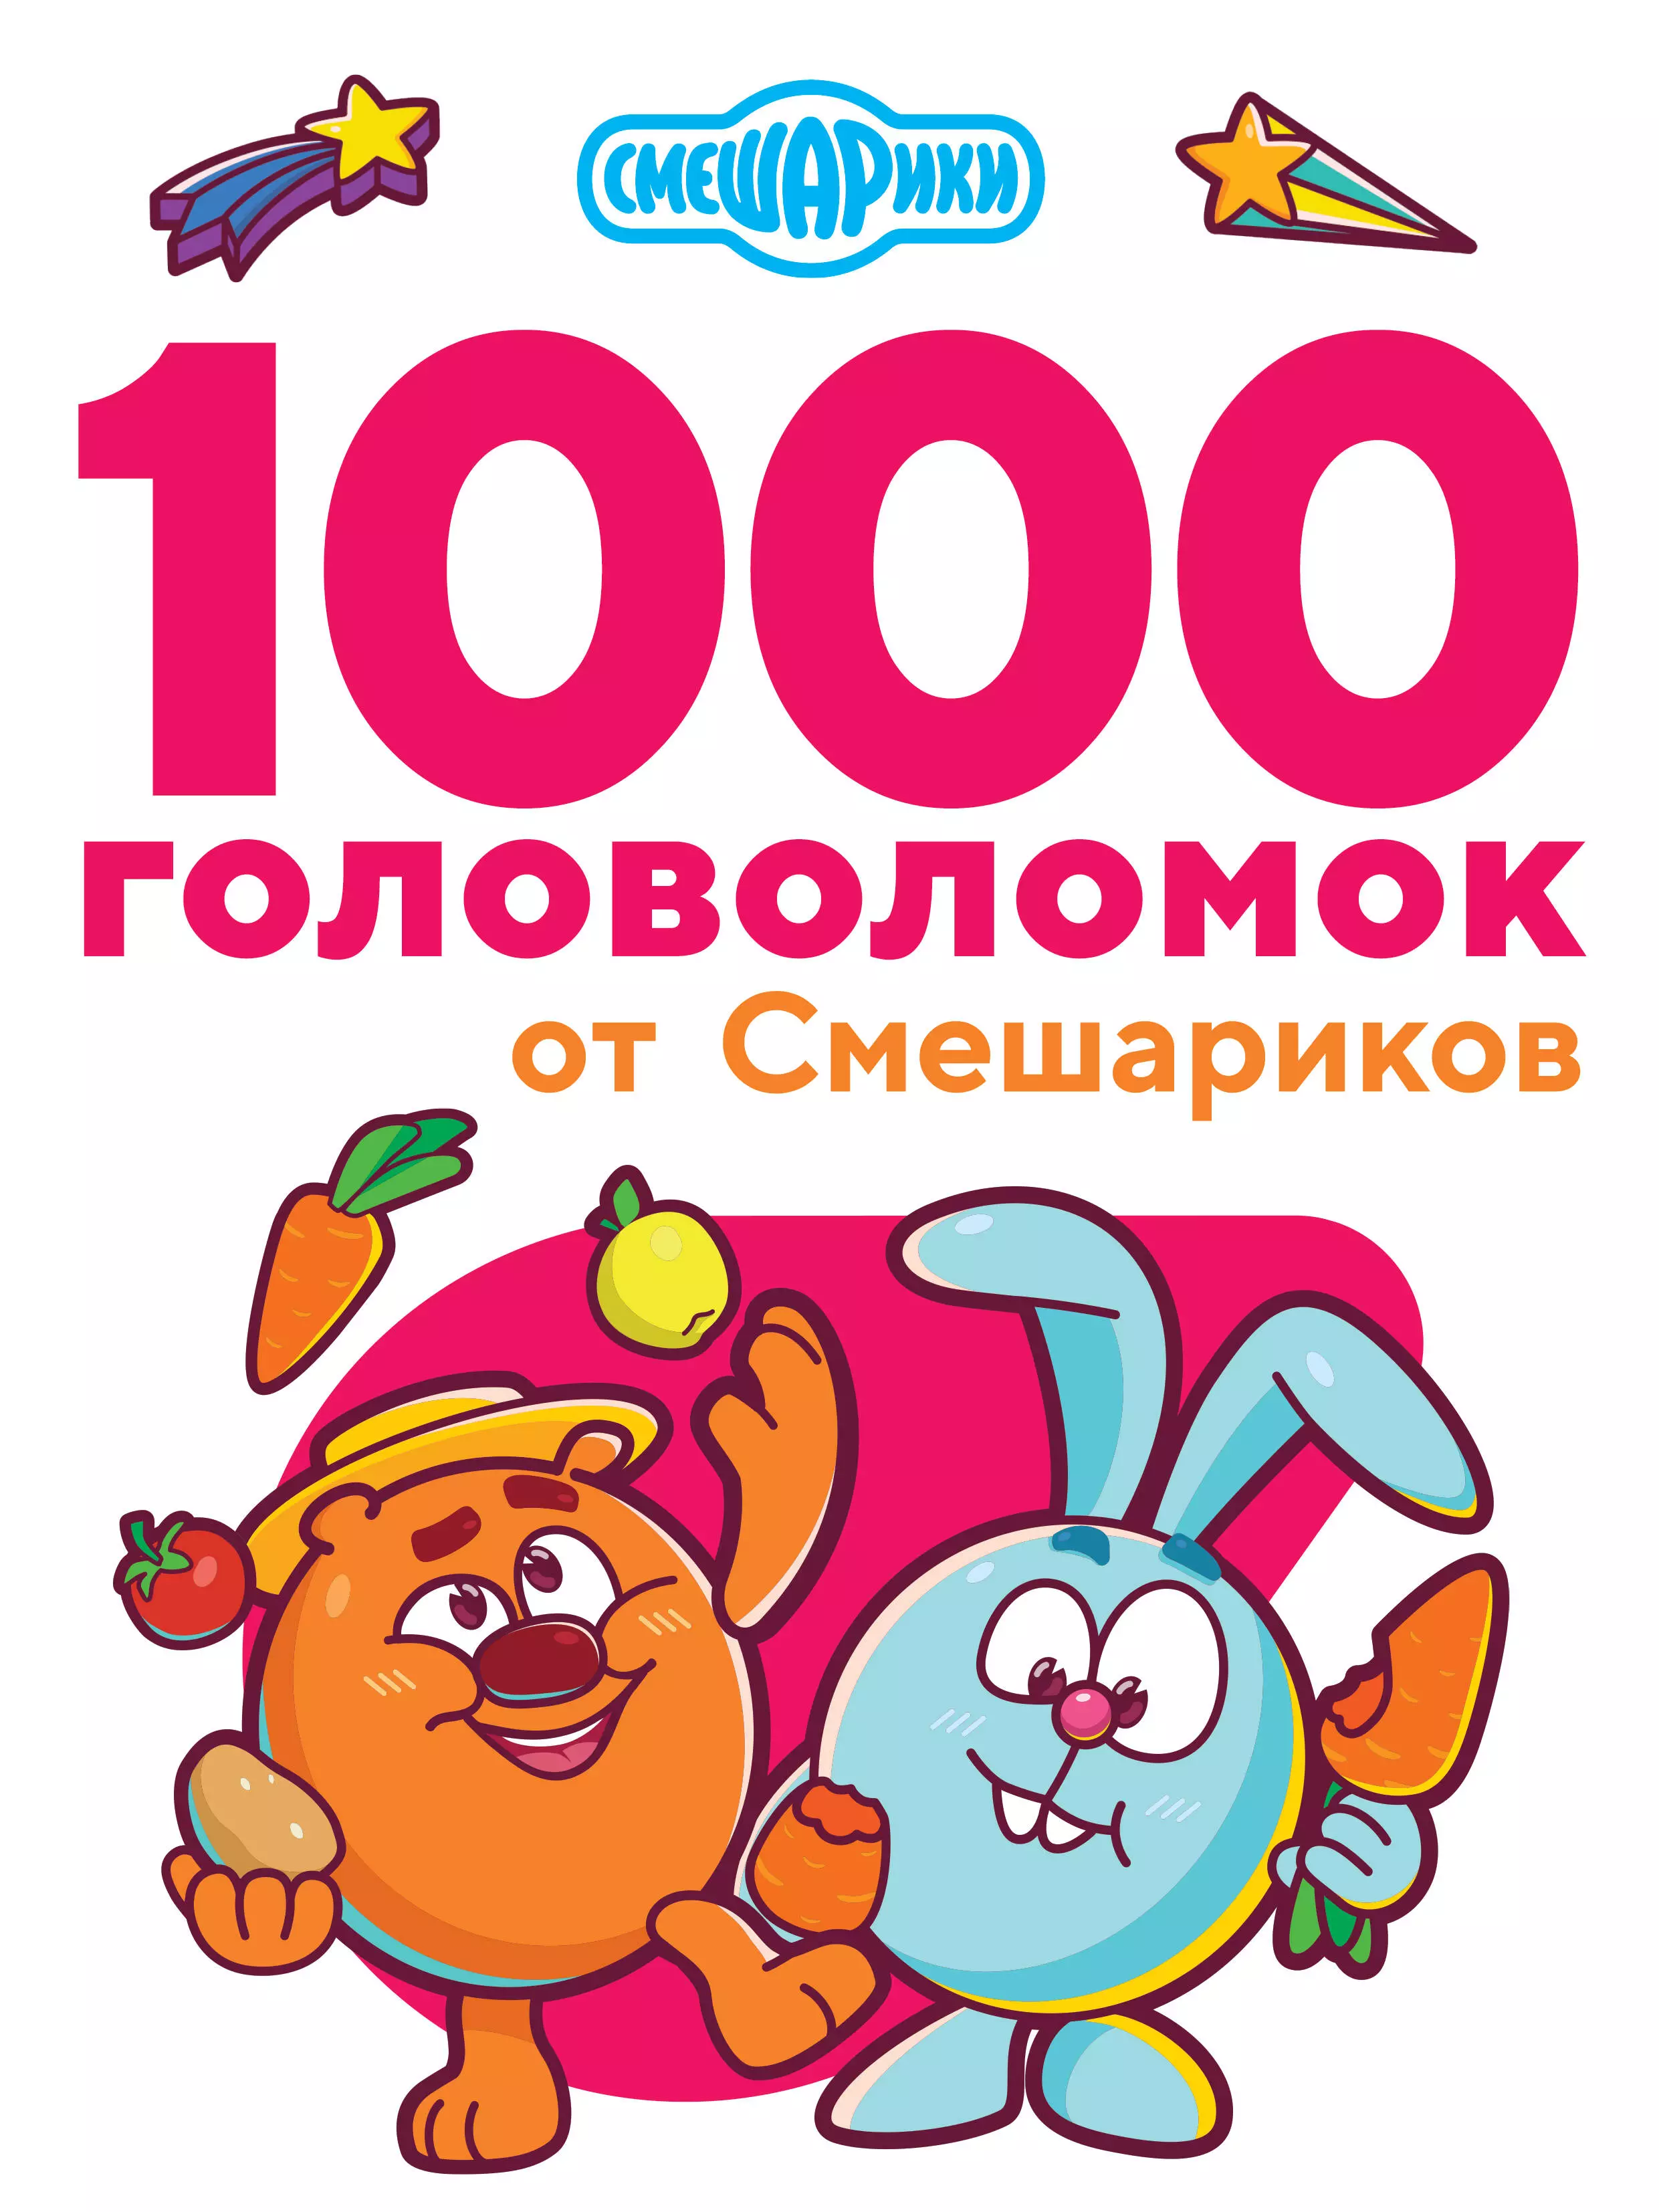 Дмитриева Валентина Геннадьевна 1000 головоломок от Смешариков